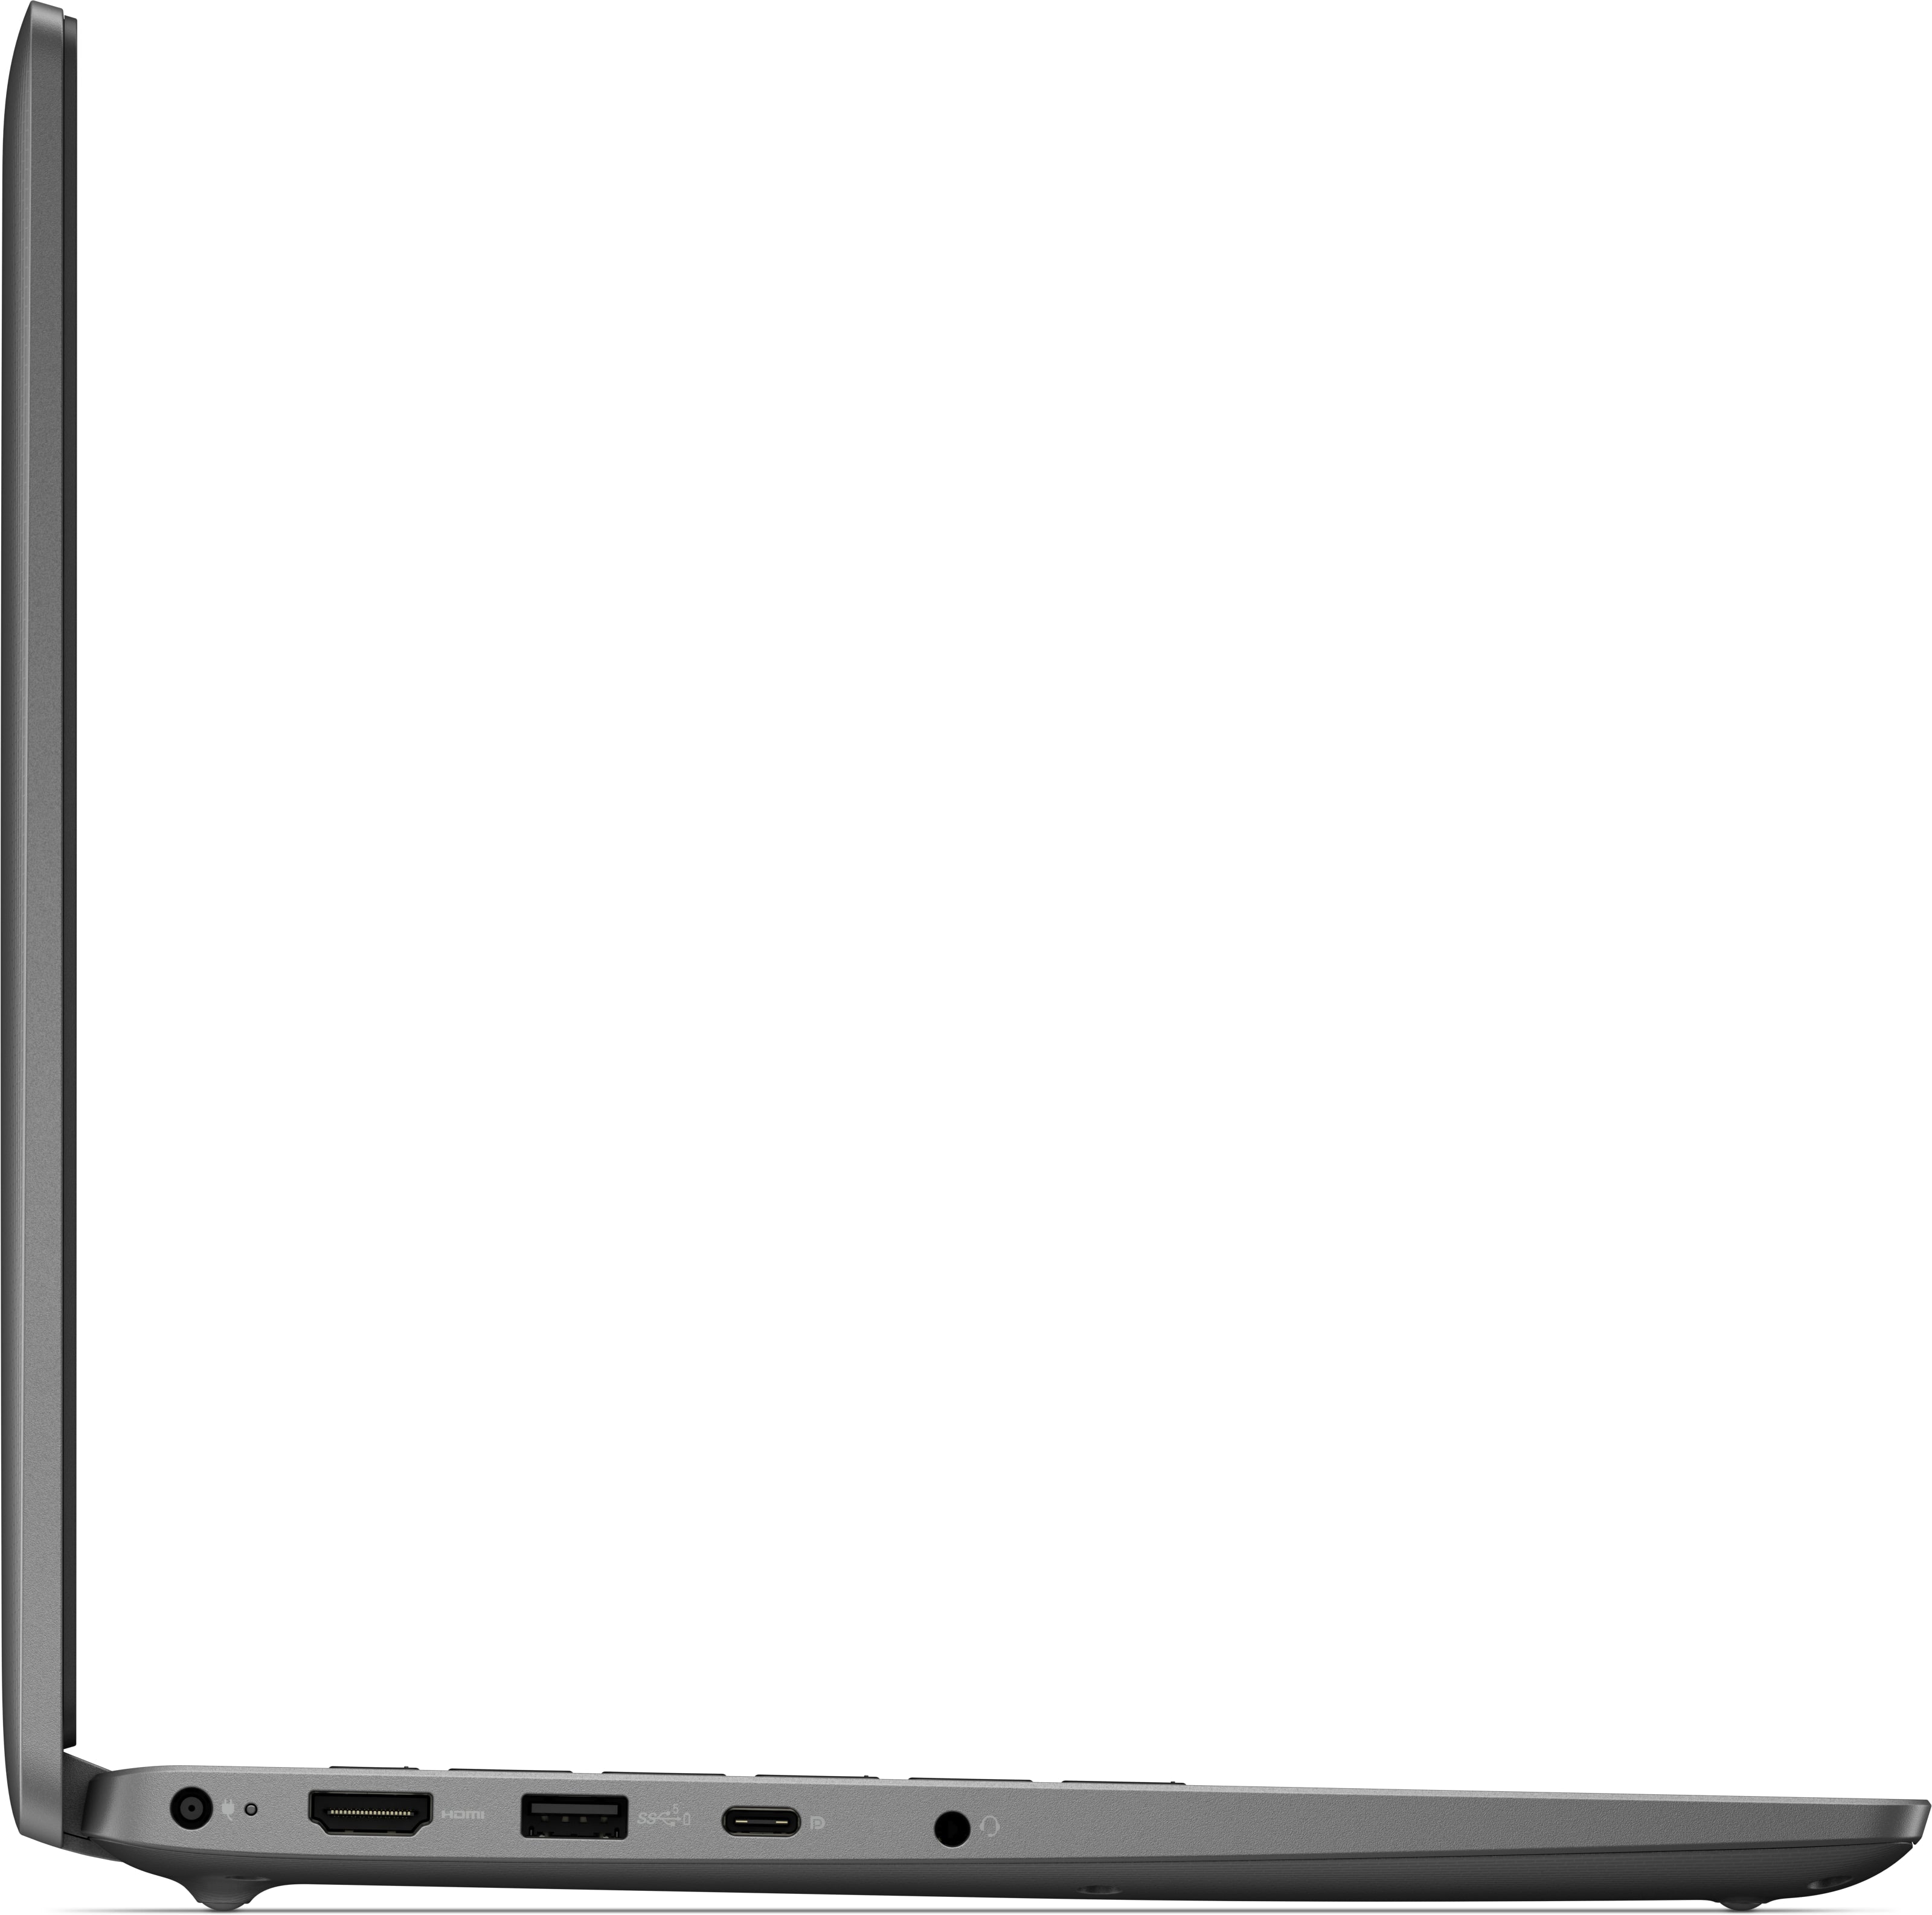 Dell Latitude 3540 Laptop (L3540-I53516G-512-W11)